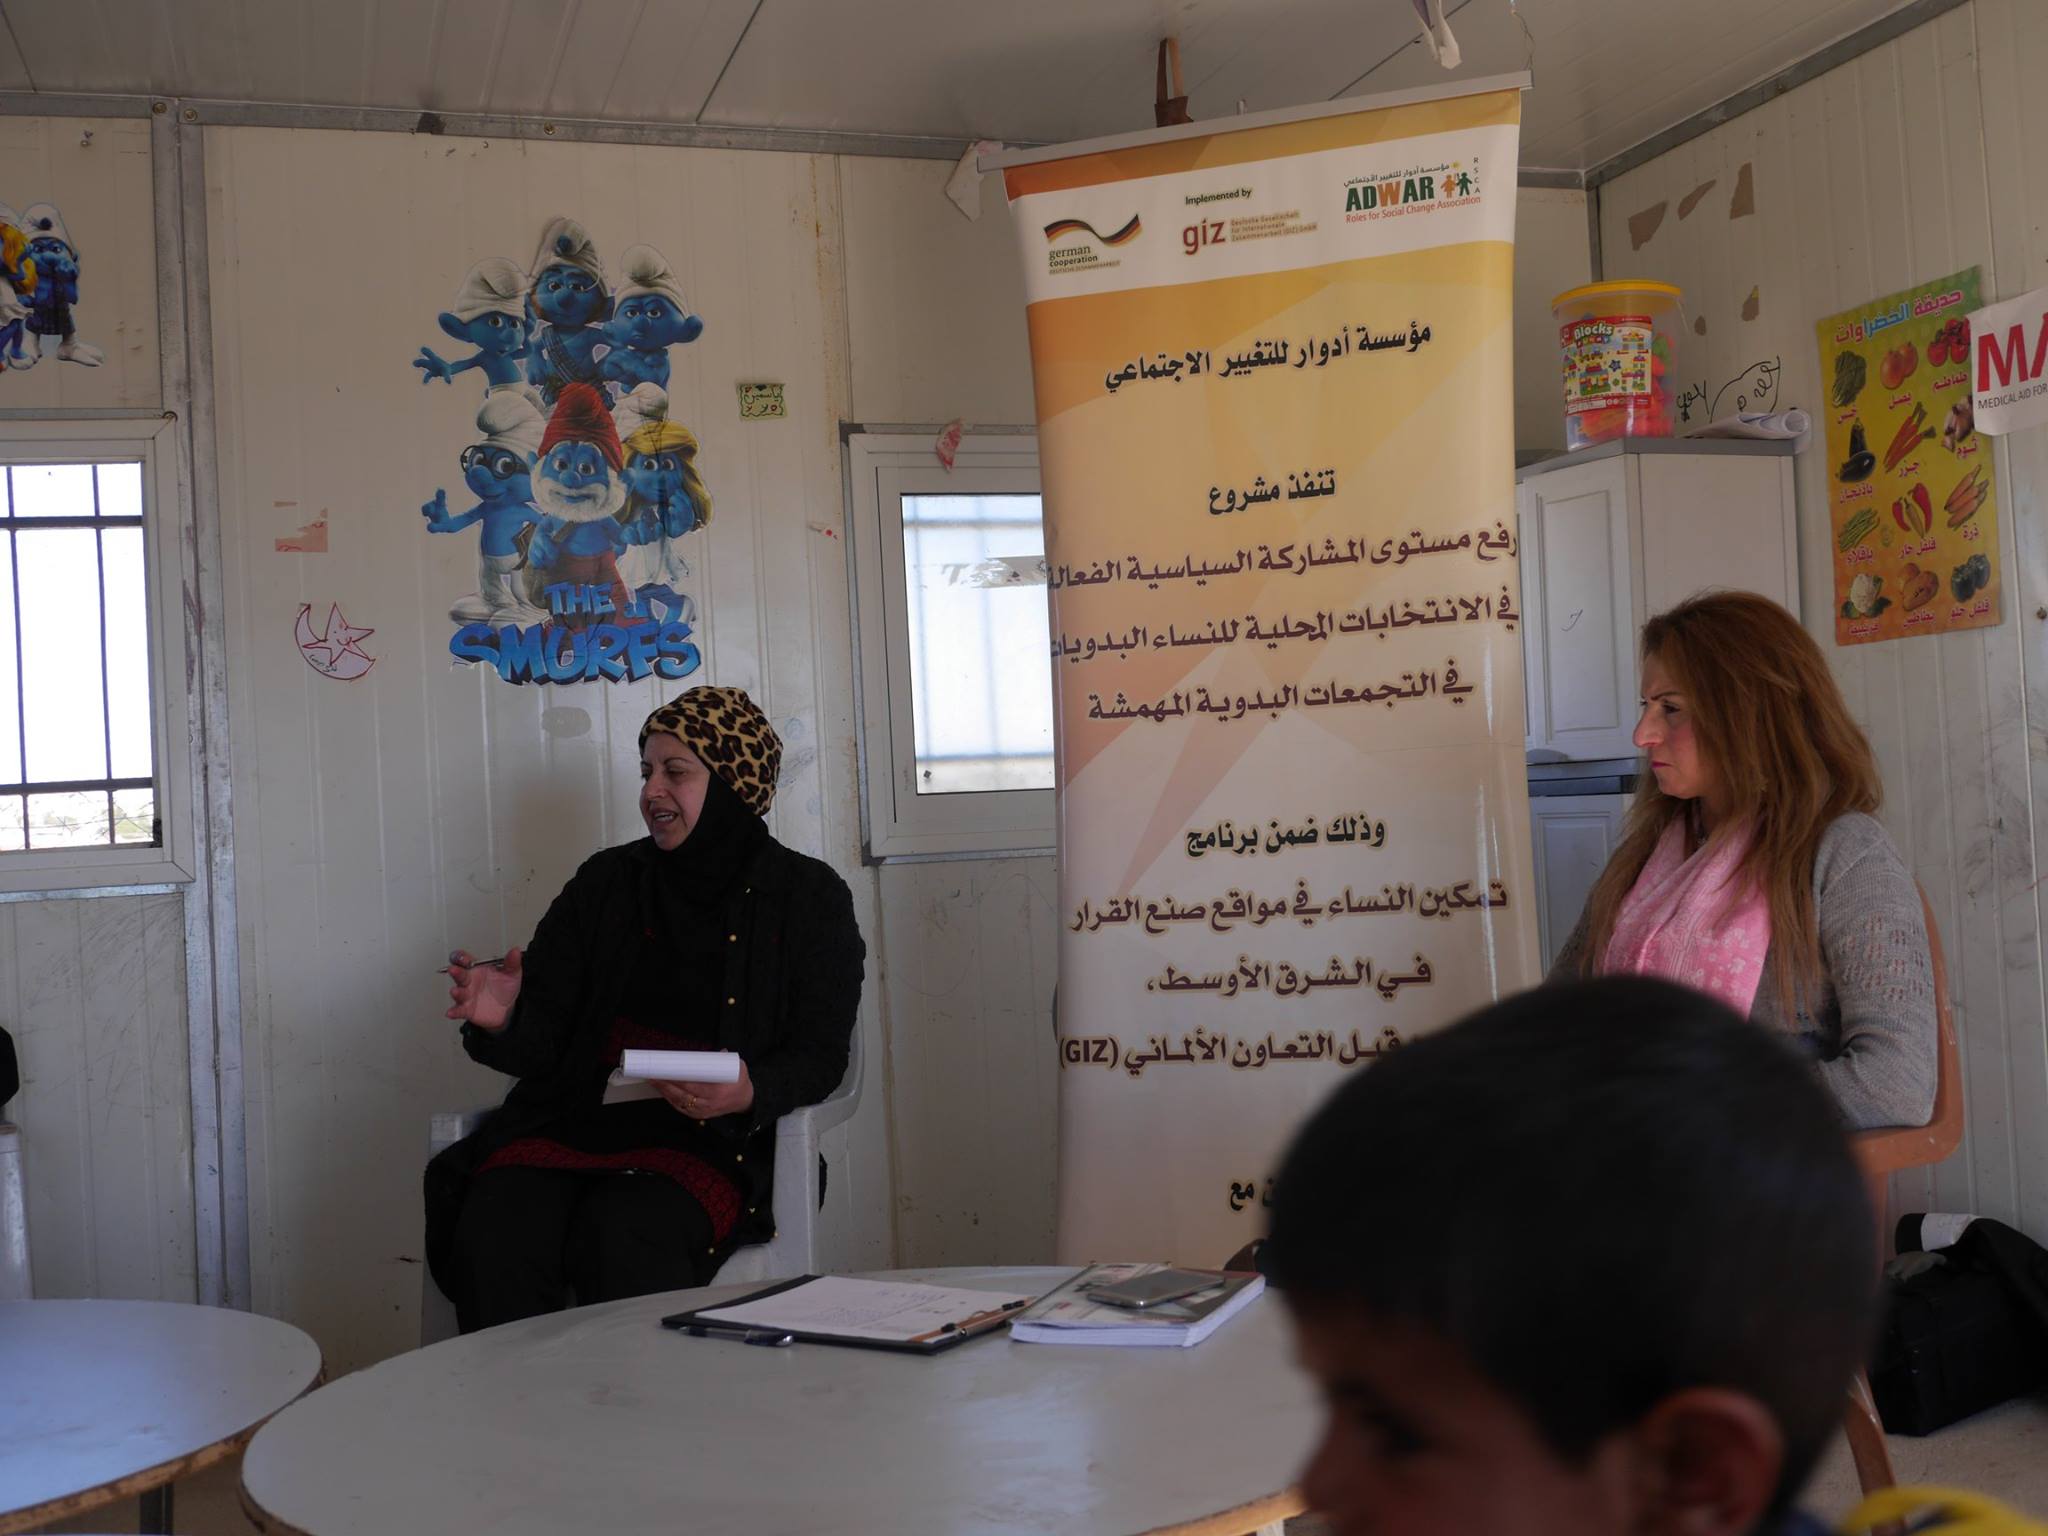  مؤسسة ادوار تواصل تنفيذ مشروع (رفع مستوى المشاركة السياسية الفعالة في الانتخابات المحلية للنساء البدويات)